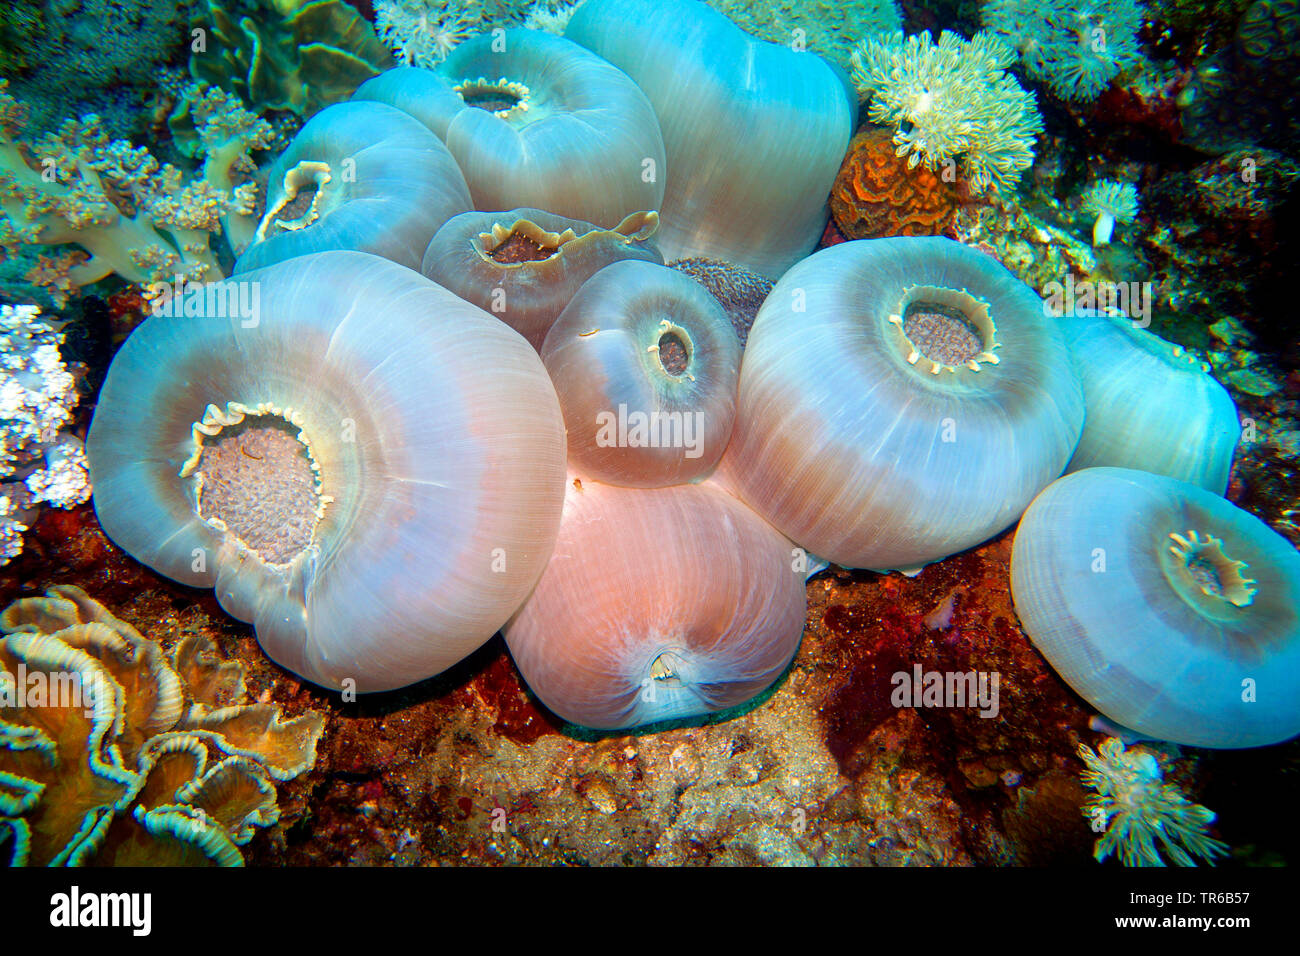 Tasse géante, oreilles d'éléphant géantes (Amplexidiscus fenestrafer corail champignon), oreilles d'éléphant géant coraux Champignons au récif, philippines, sud de l'île de Leyte, Panaon, Pintuyan Banque D'Images